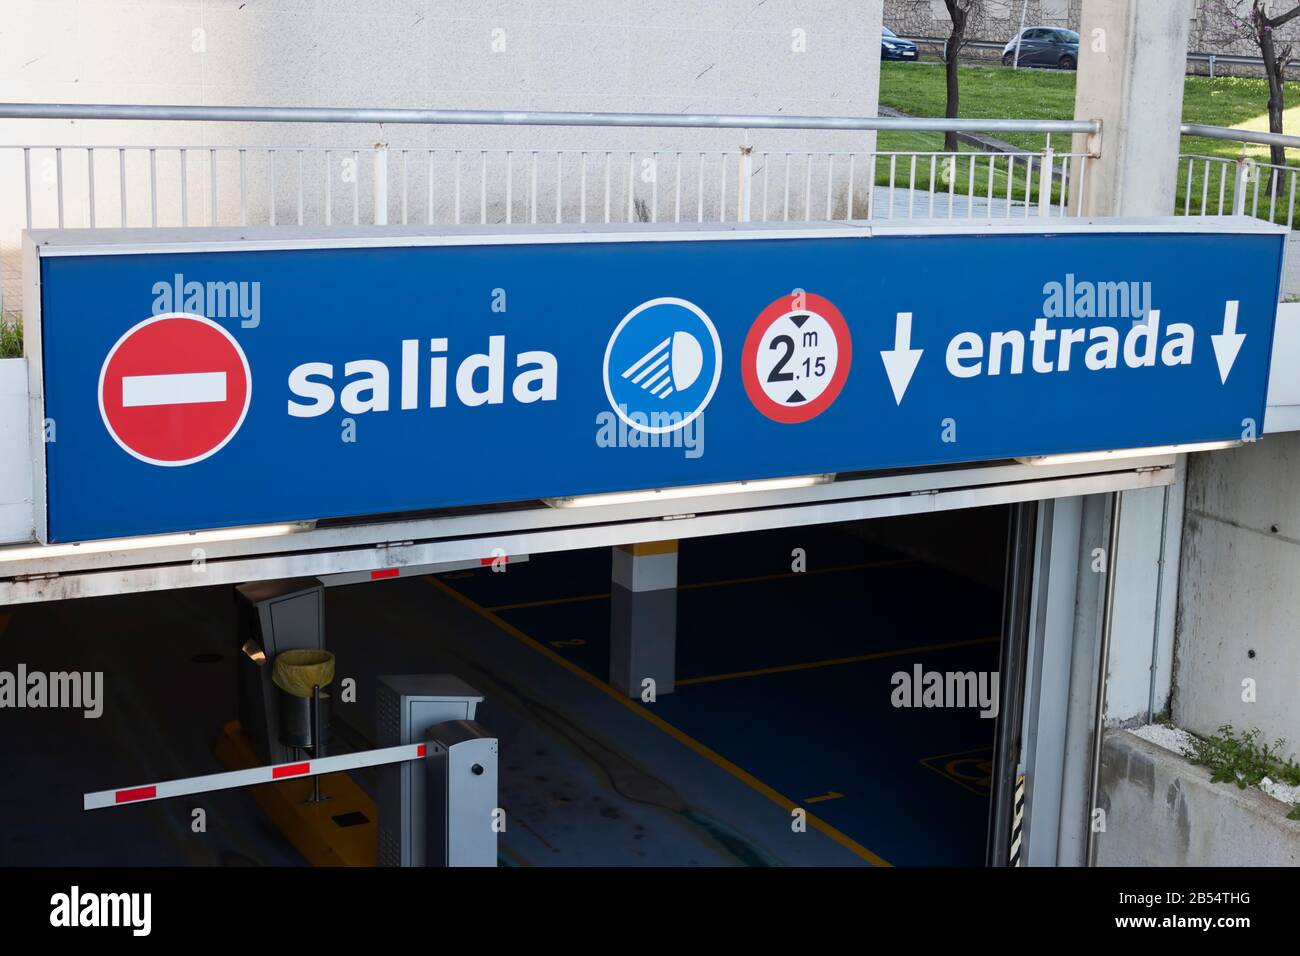 Salida, panneau entrada à l'entrée du parking souterrain. Sortie, entrée en espagnol. Banque D'Images